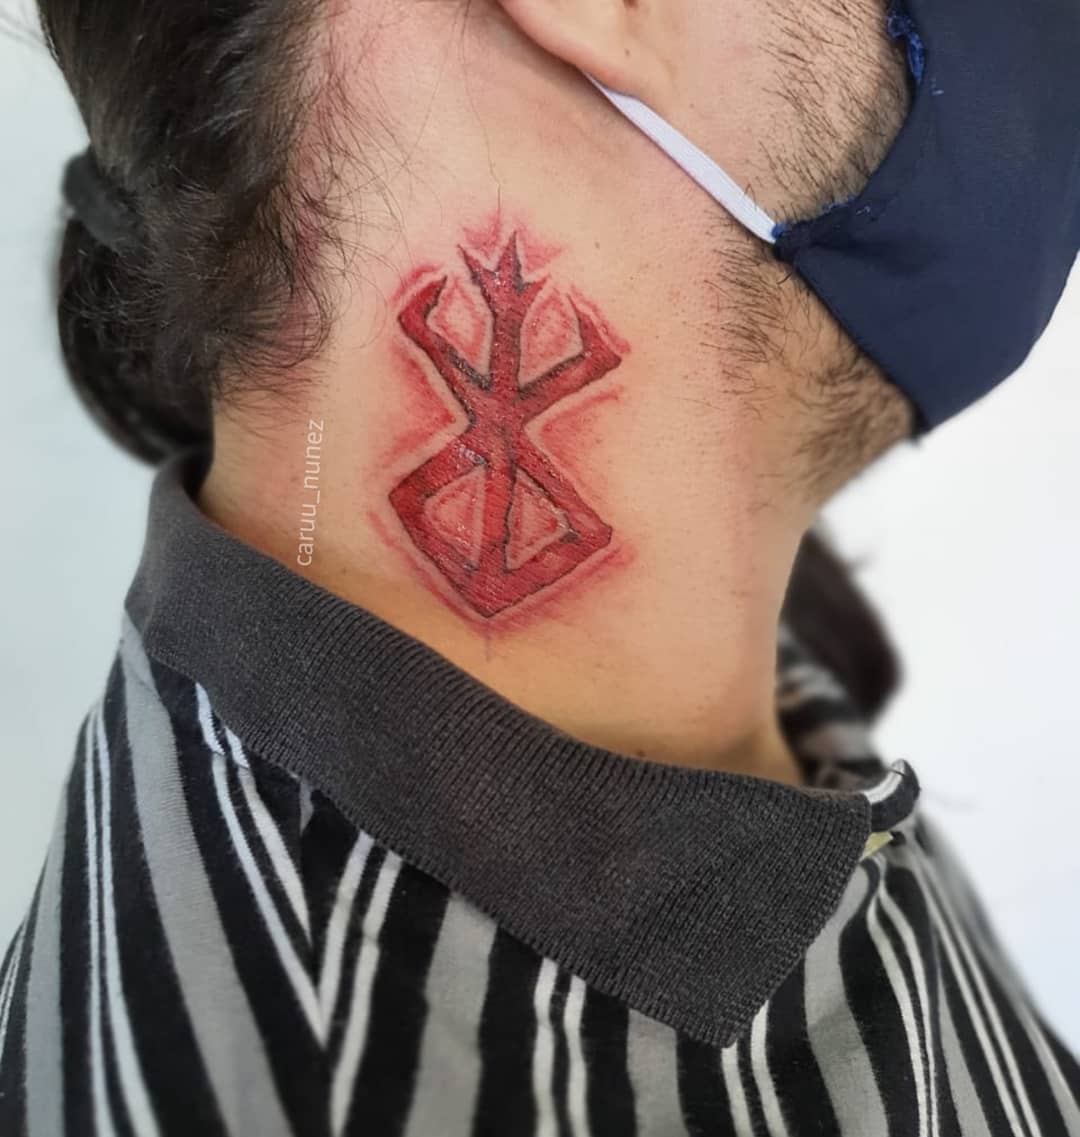 berserk symbol neck tattooPesquisa do TikTok